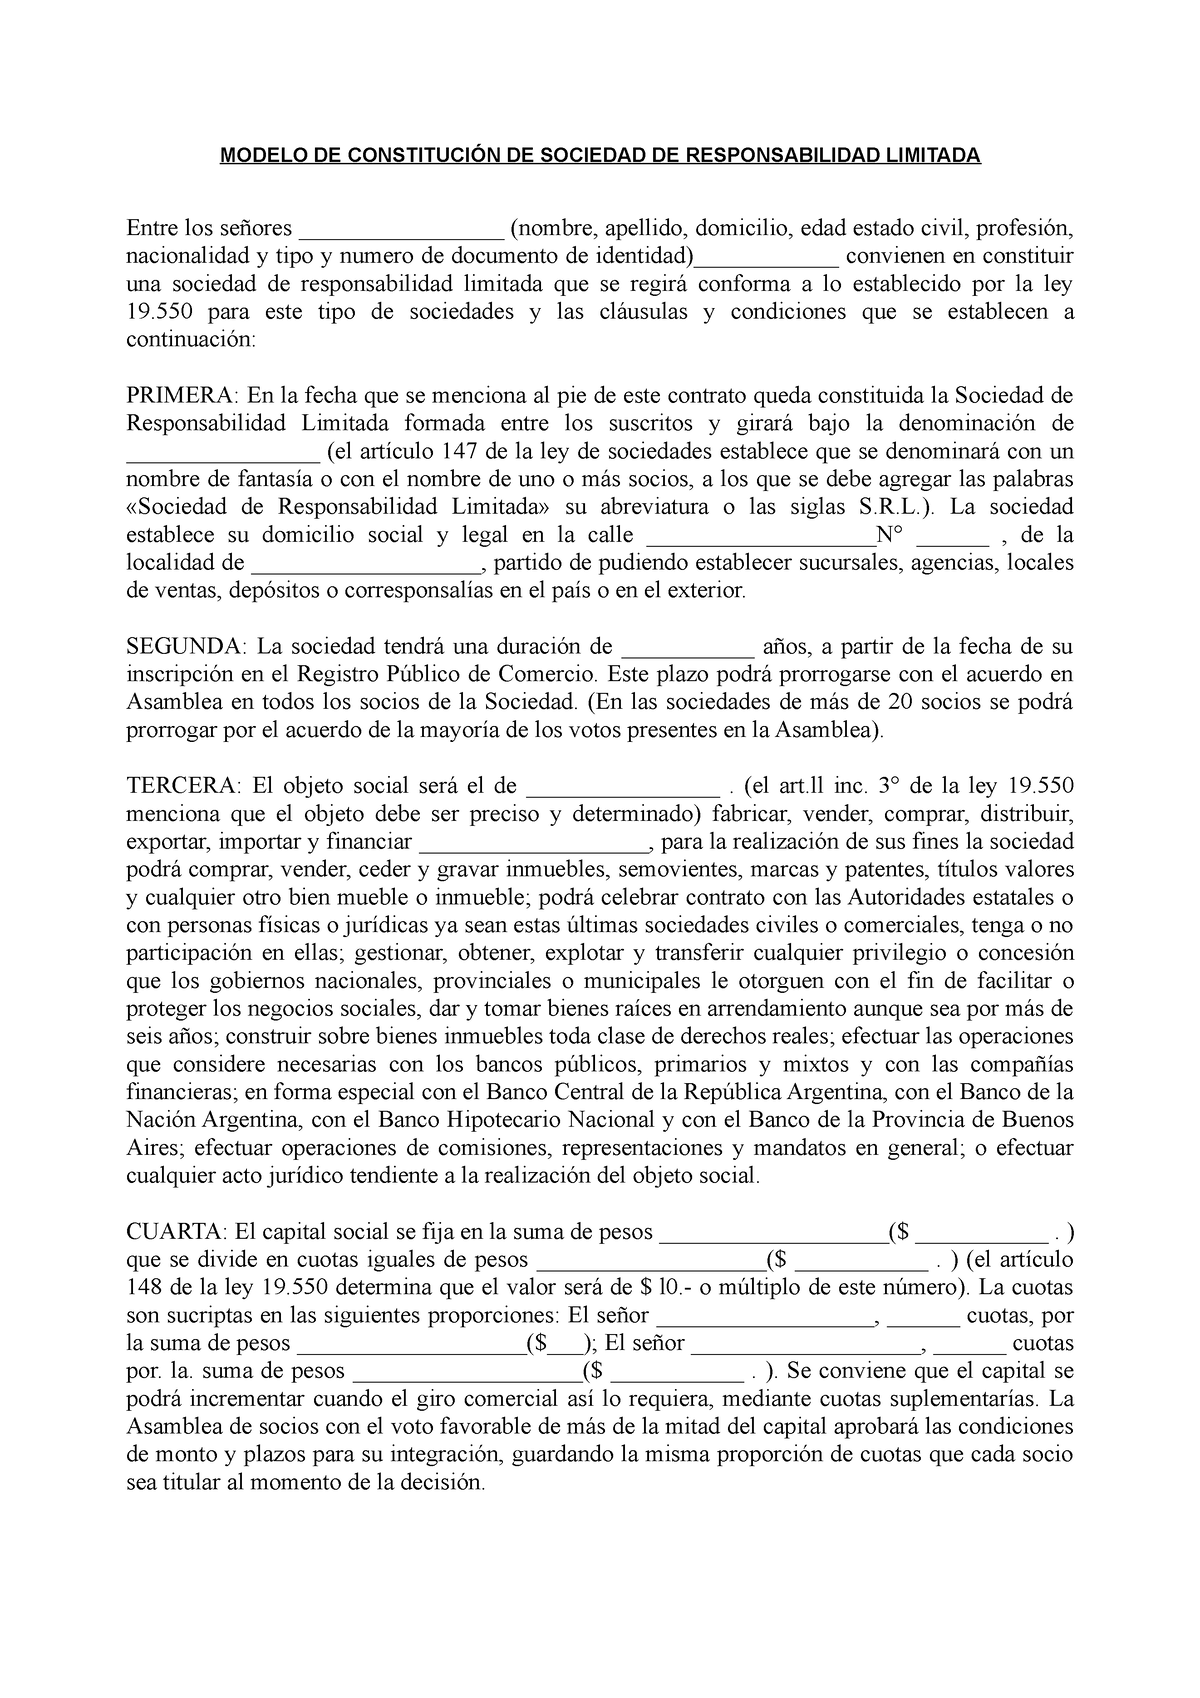 Contrato constitutivo de una SRL - MODELO DE CONSTITUCIÓN DE SOCIEDAD DE  RESPONSABILIDAD LIMITADA - Studocu